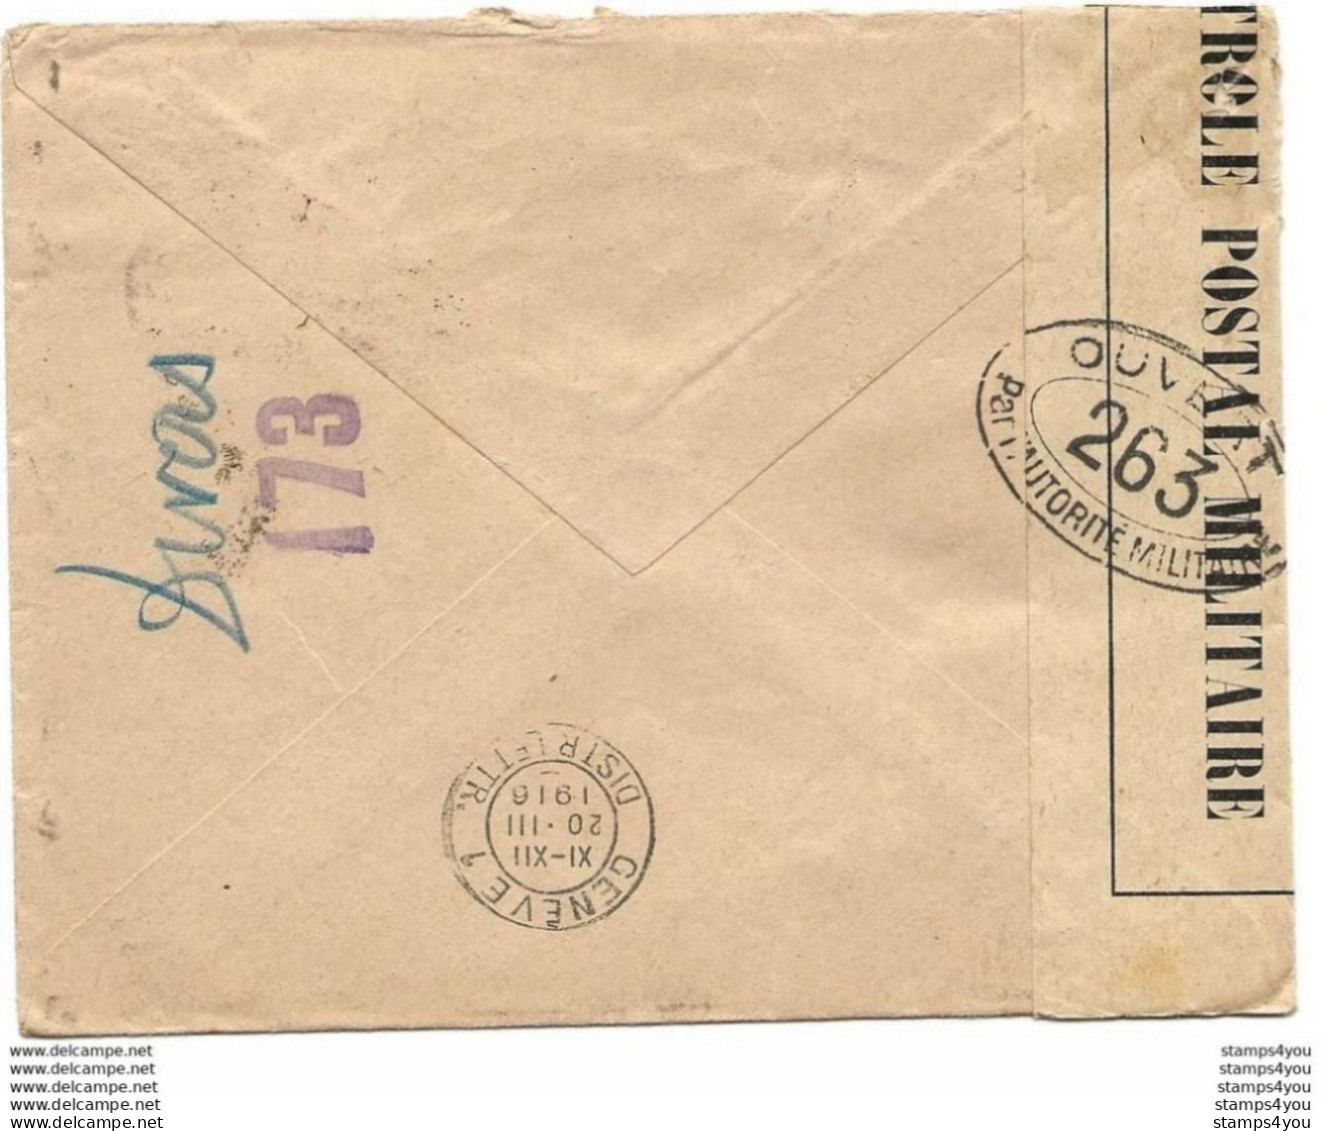 221 - 67 - Enveloppe Envoyée Du Gard à La Croix Rouge Genève 1918 - Censure - Petite Déchirure En Haut - 1. Weltkrieg